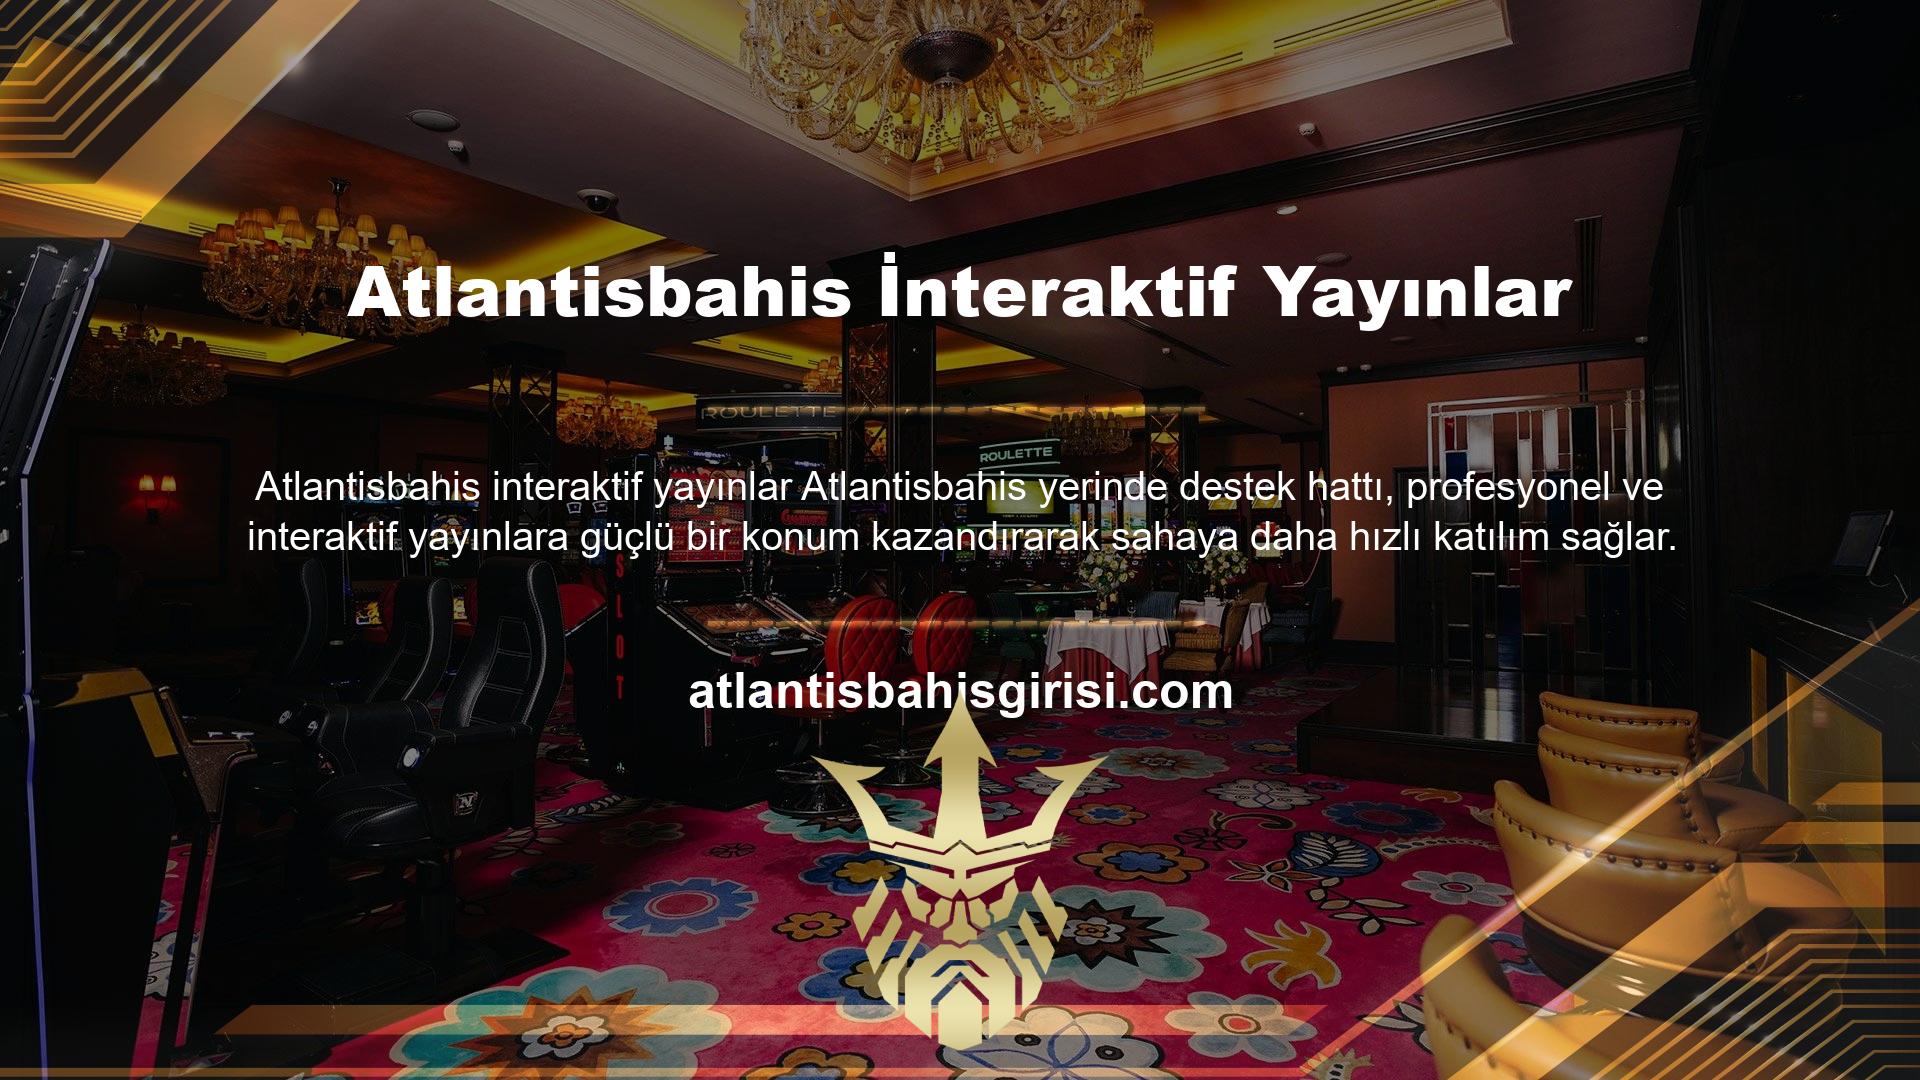 Atlantisbahis içeriğinin güvenilirliği konusunda web sitemizi Türkiye'de uzun yıllardır işletiyoruz ve çok sayıda memnun müşteriye sahibiz